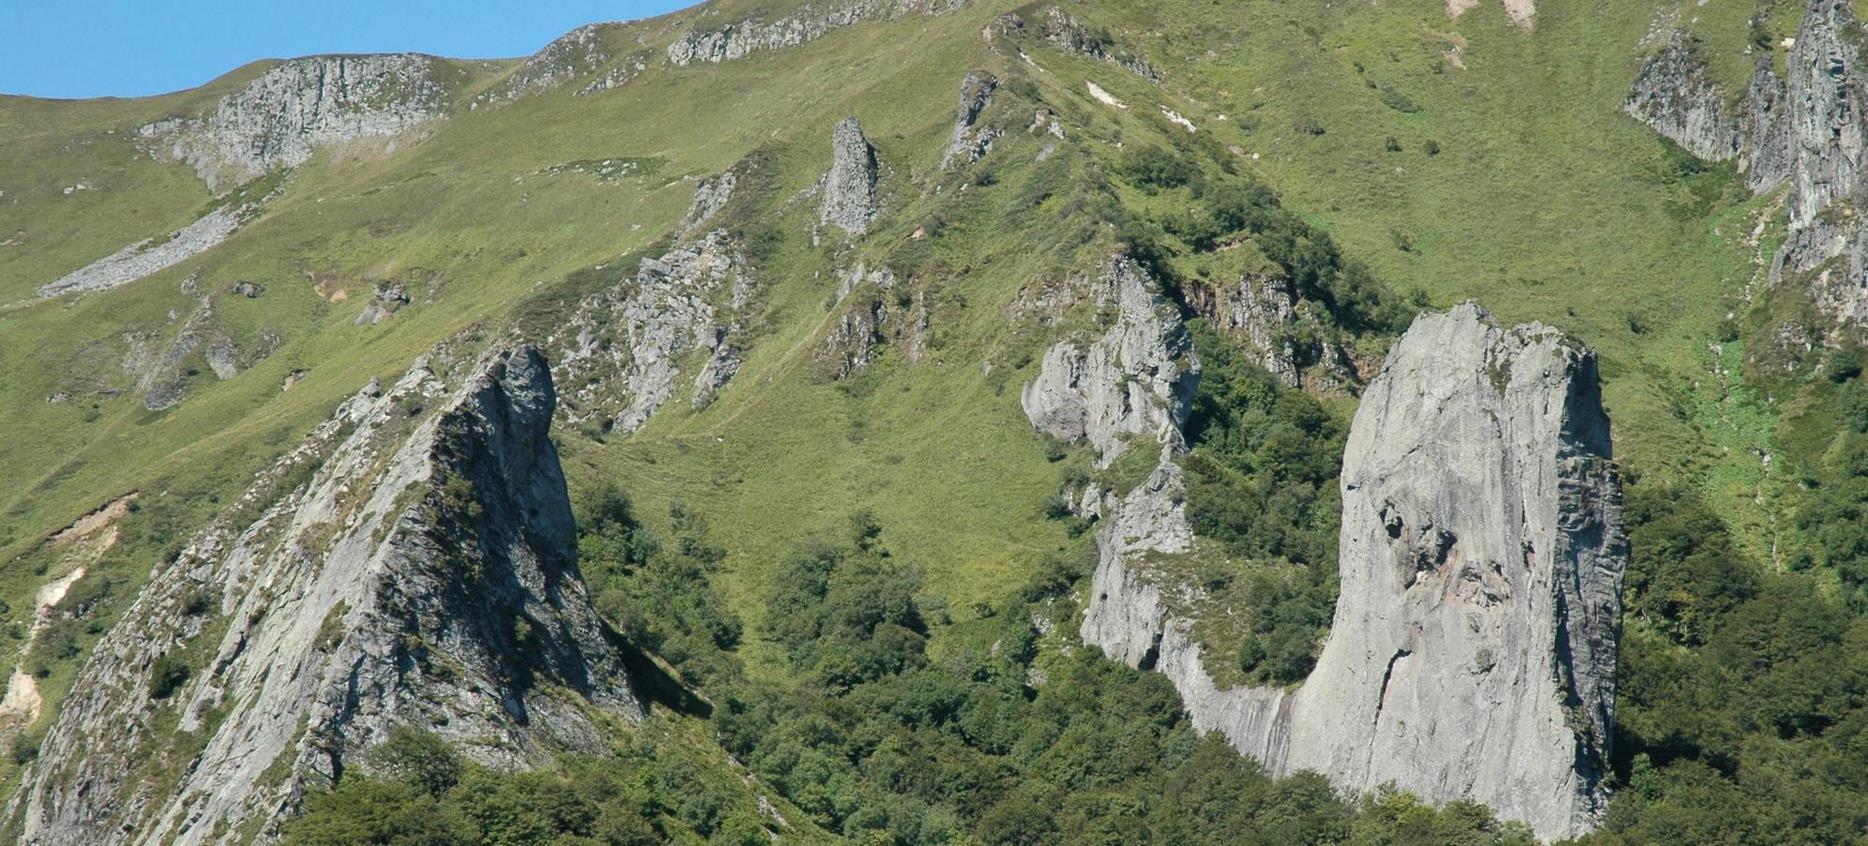 Super Besse - La Vallée de Chaudefour, climbing route in the natural park